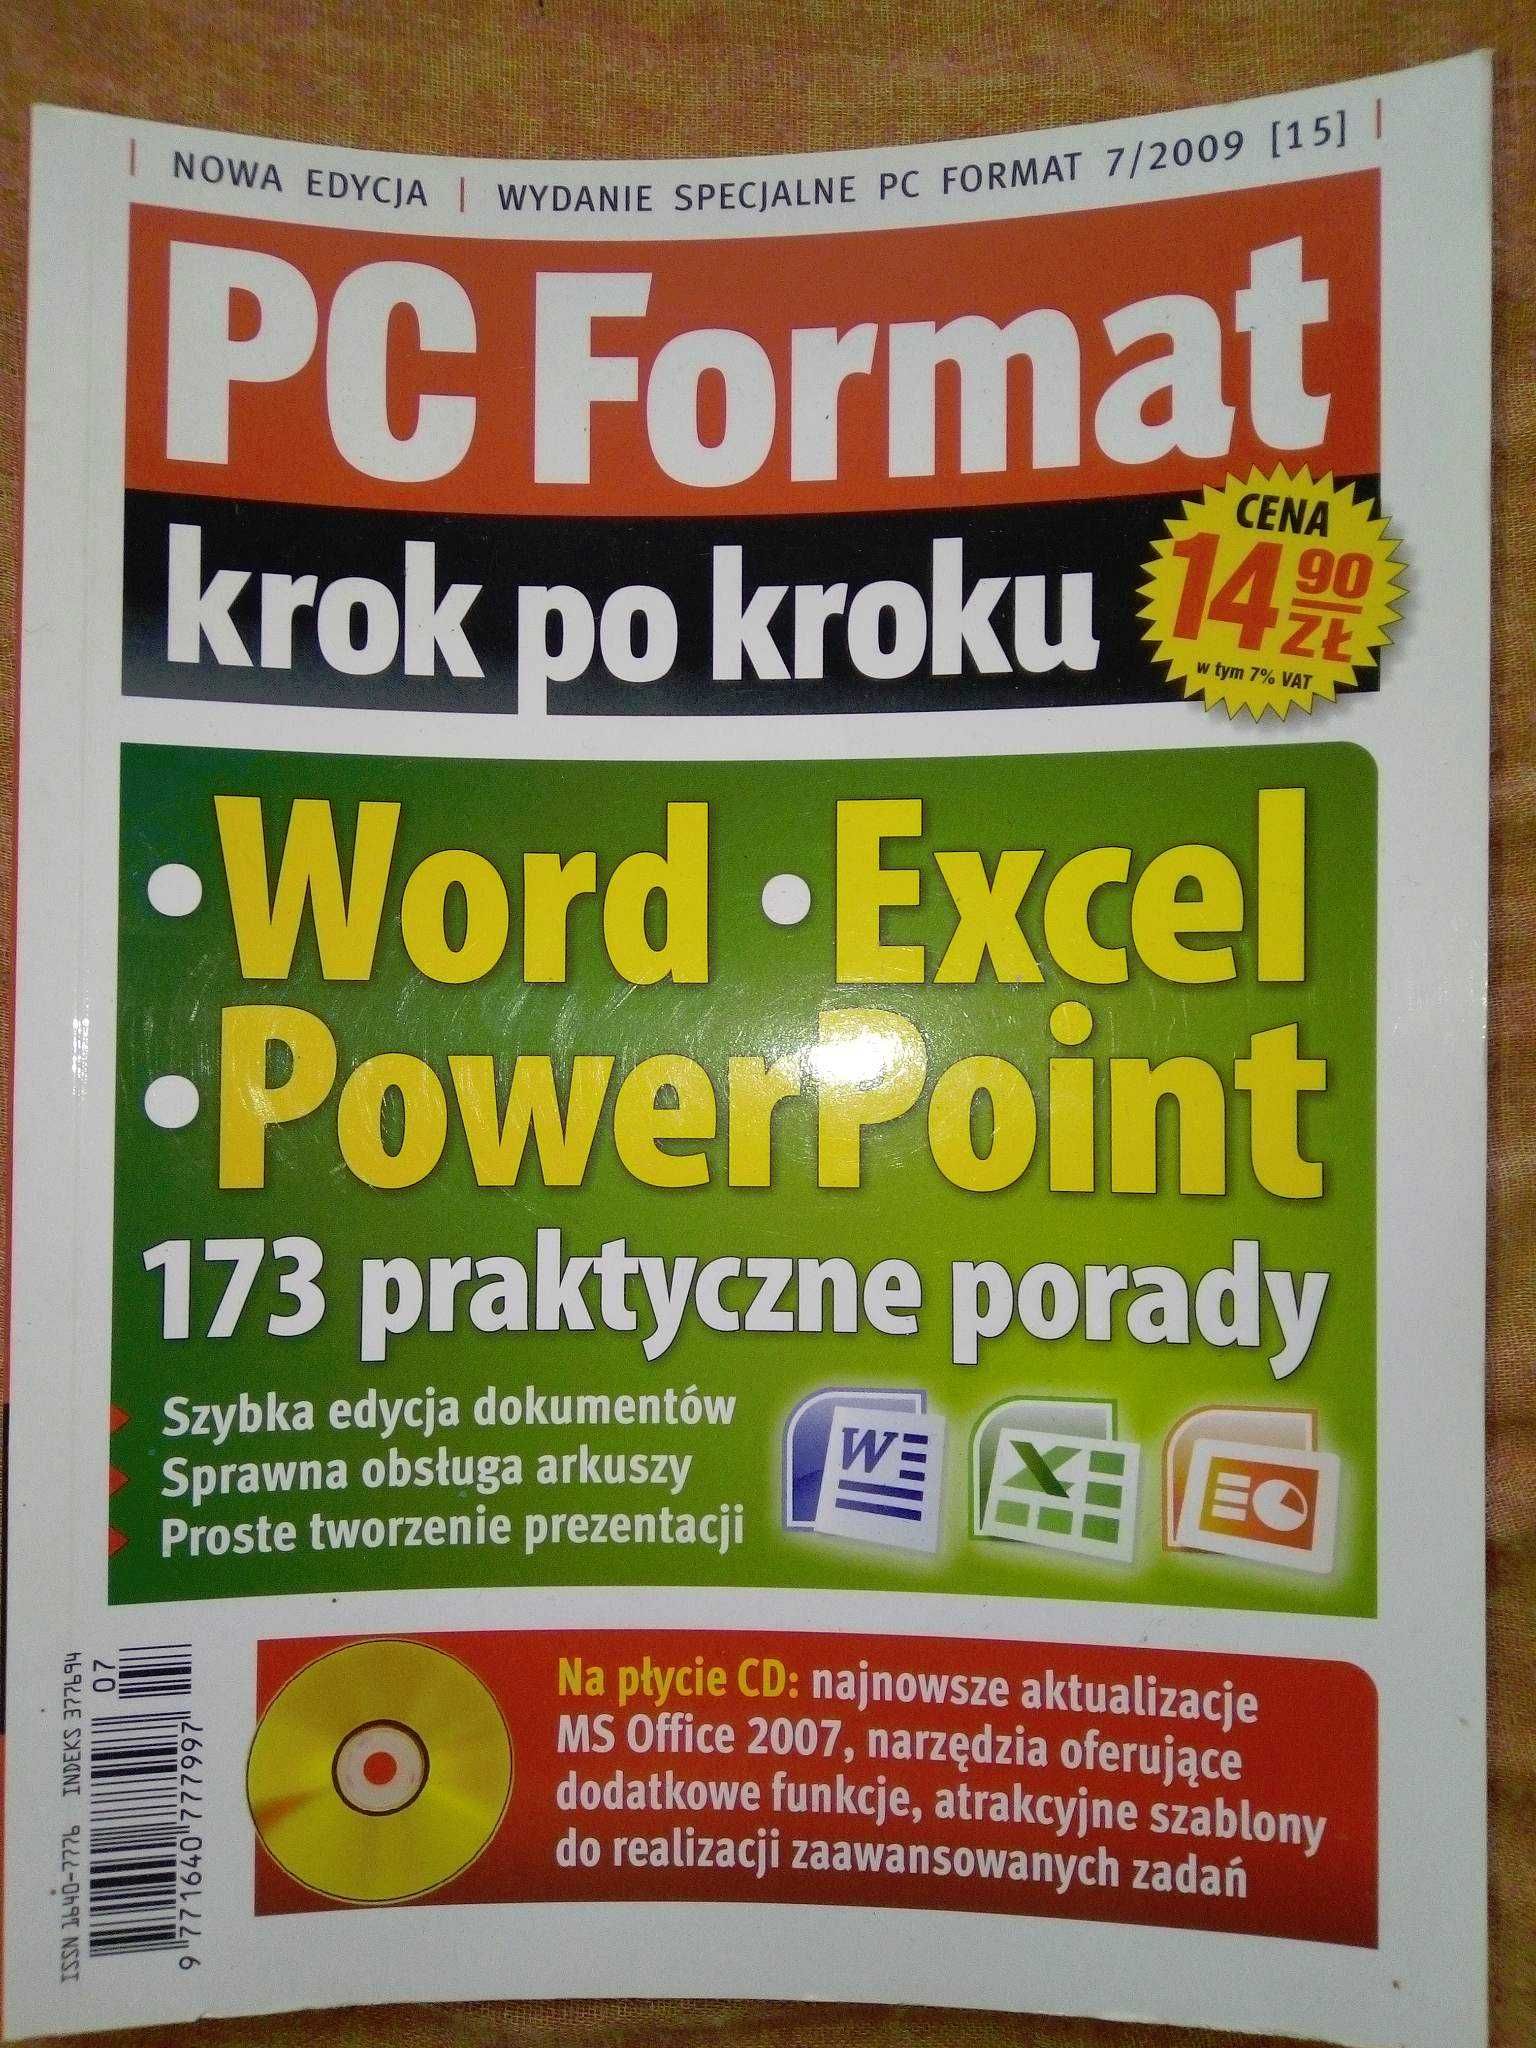 Pc Format krok po kroku 7 2009 Word Excel PowerPoint Gazeta + płyta CD